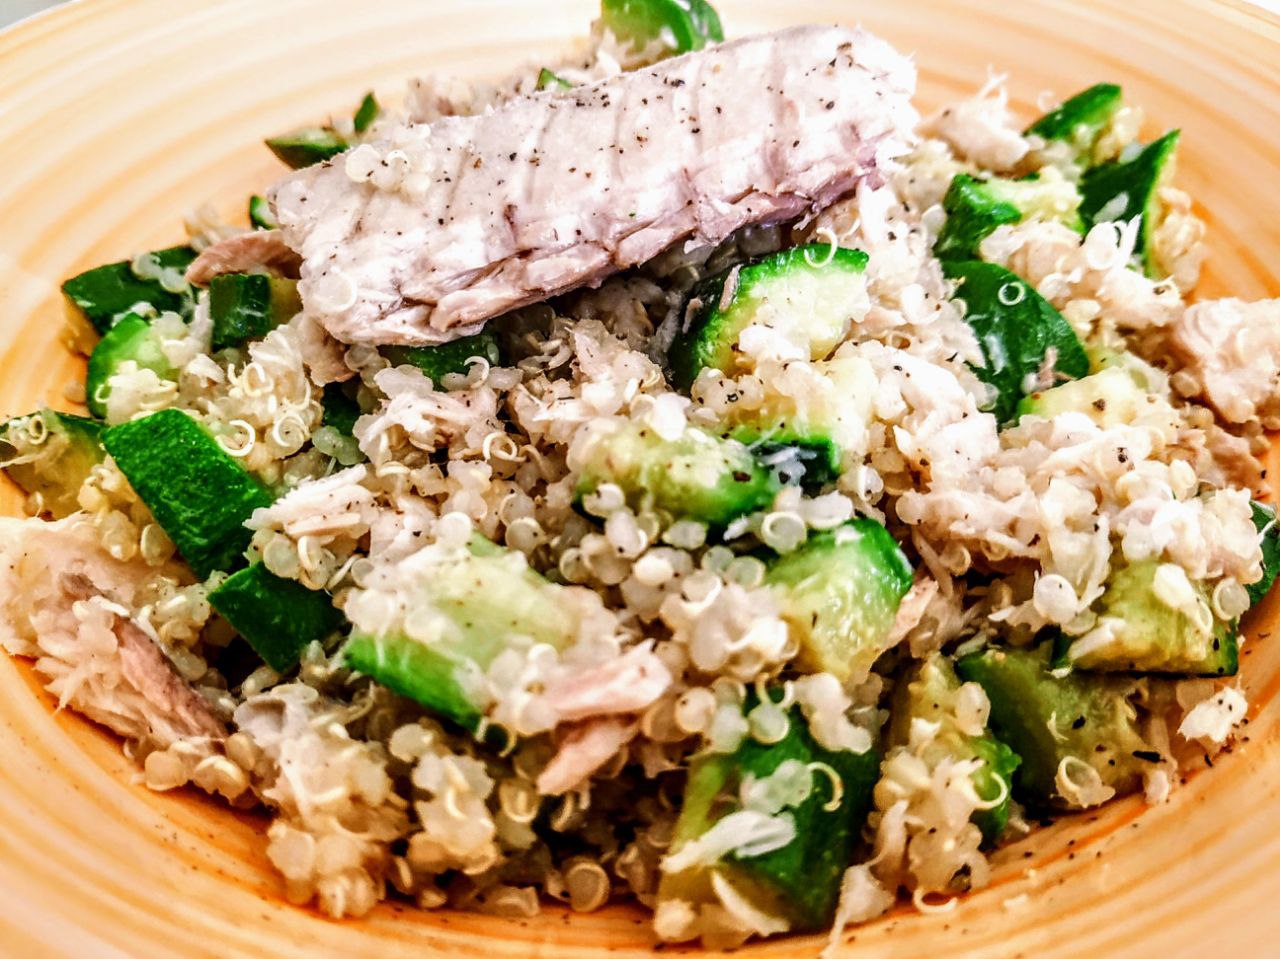 Primi piatti a base di pesce leggeri e senza glutine: quinoa integrale con zucchine e filetti di sgombro all'olio d'oliva